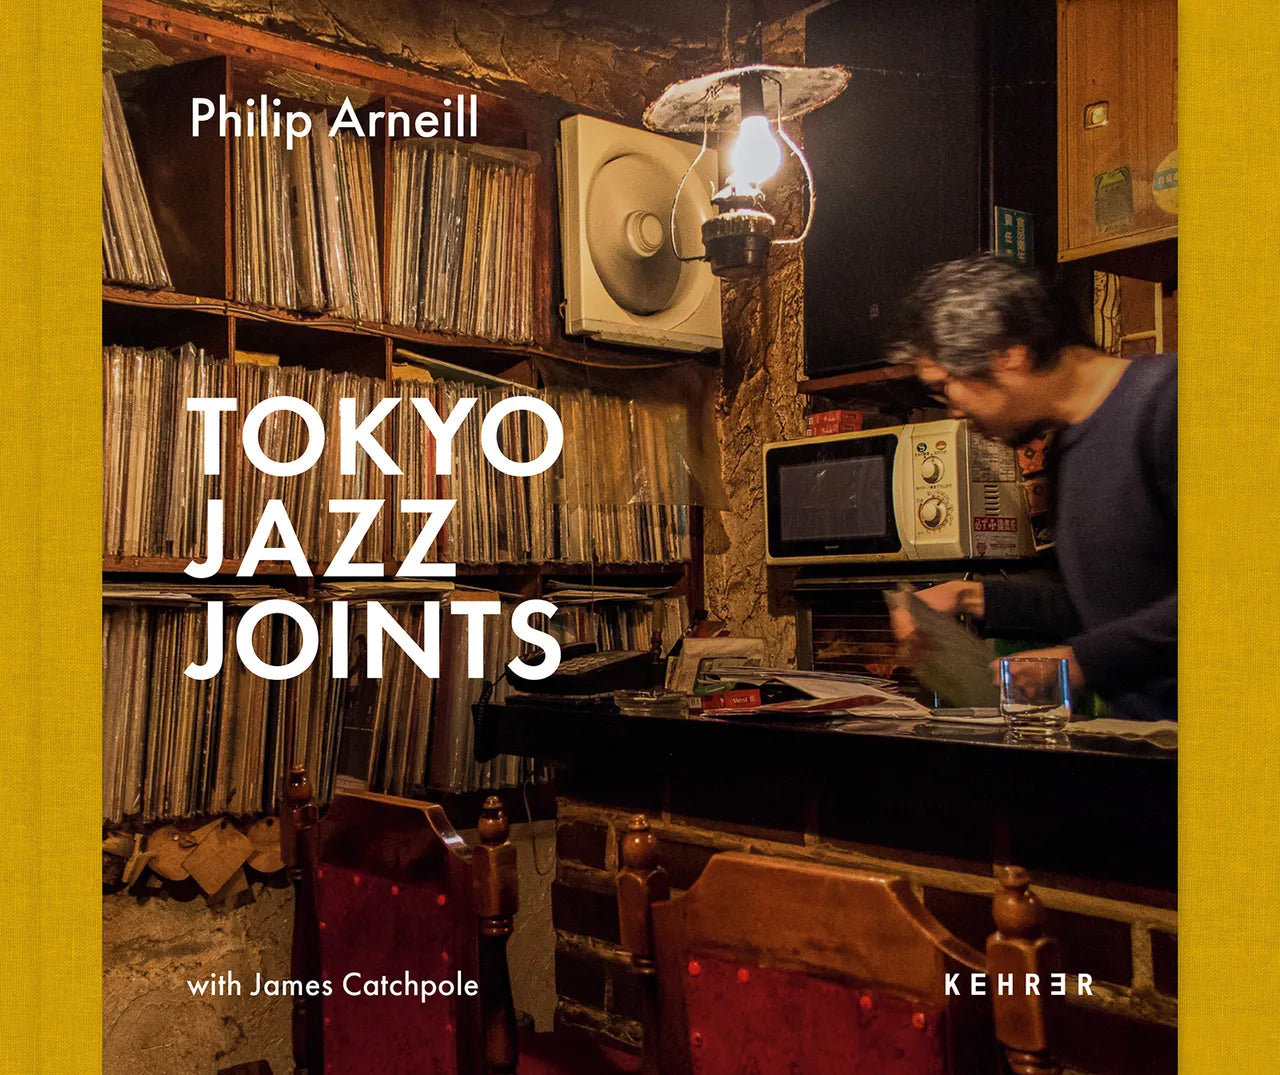 Philip Arneill - Tokyo Jazz Joints